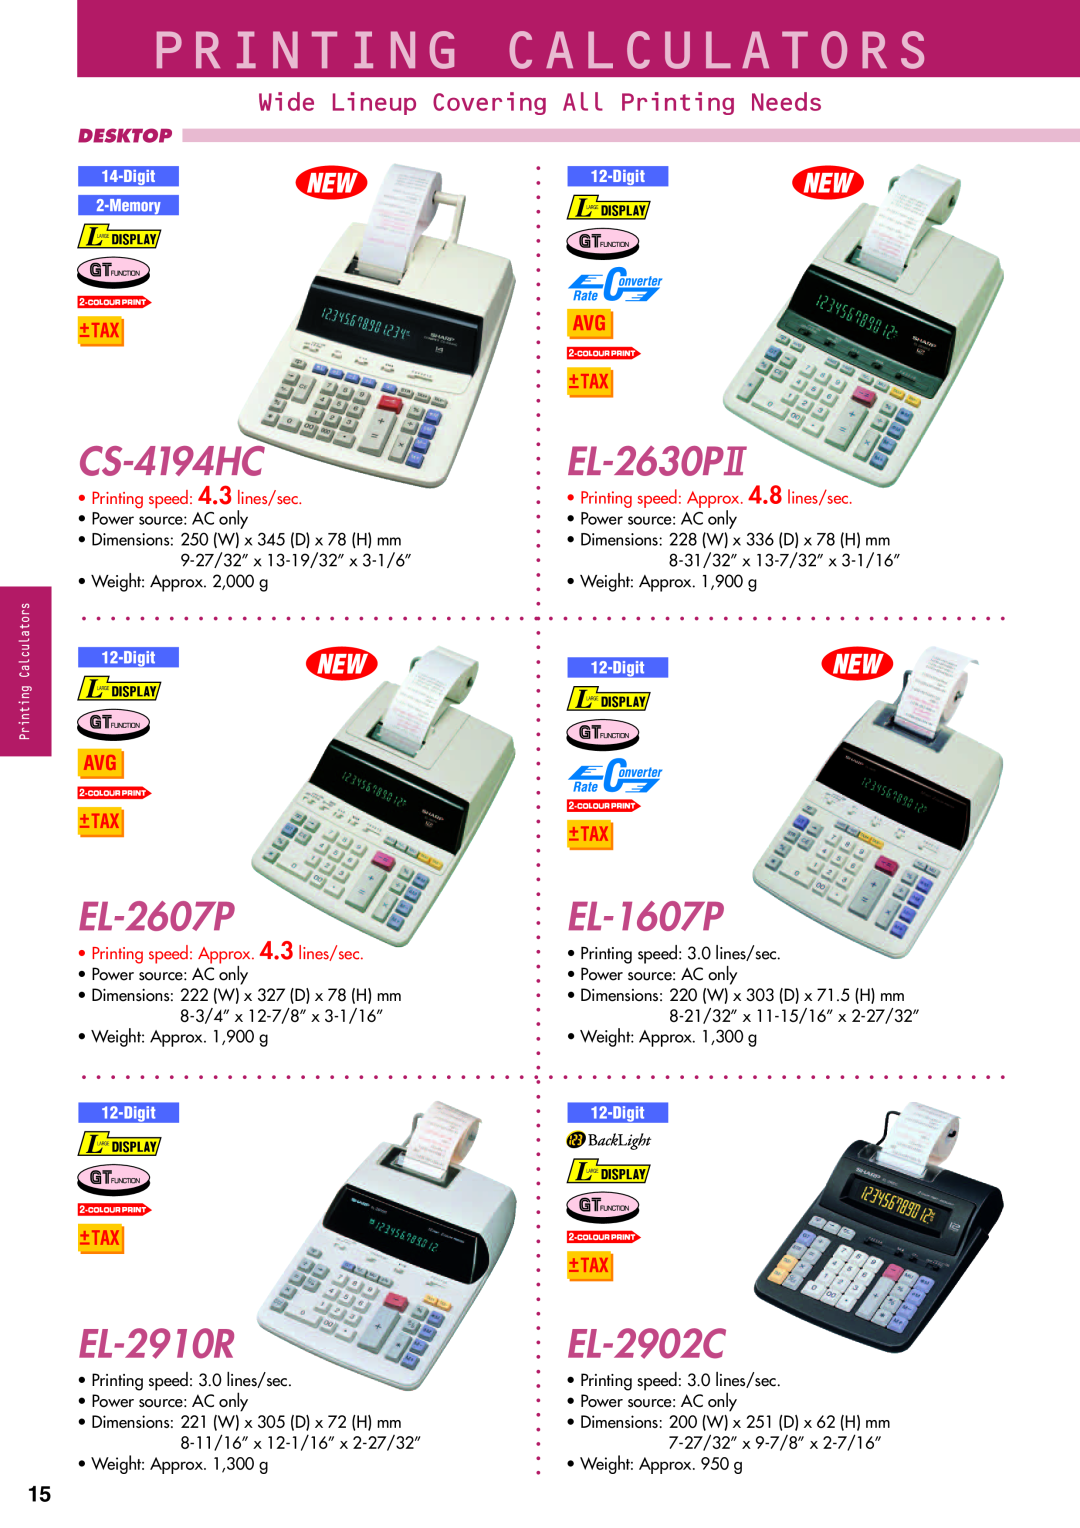 Sharp electronic calculator CS-4194HC, EL-2607P, EL-2910R, EL-2630P, EL-1607P, EL-2902C, Printing Calculators, Desktop 